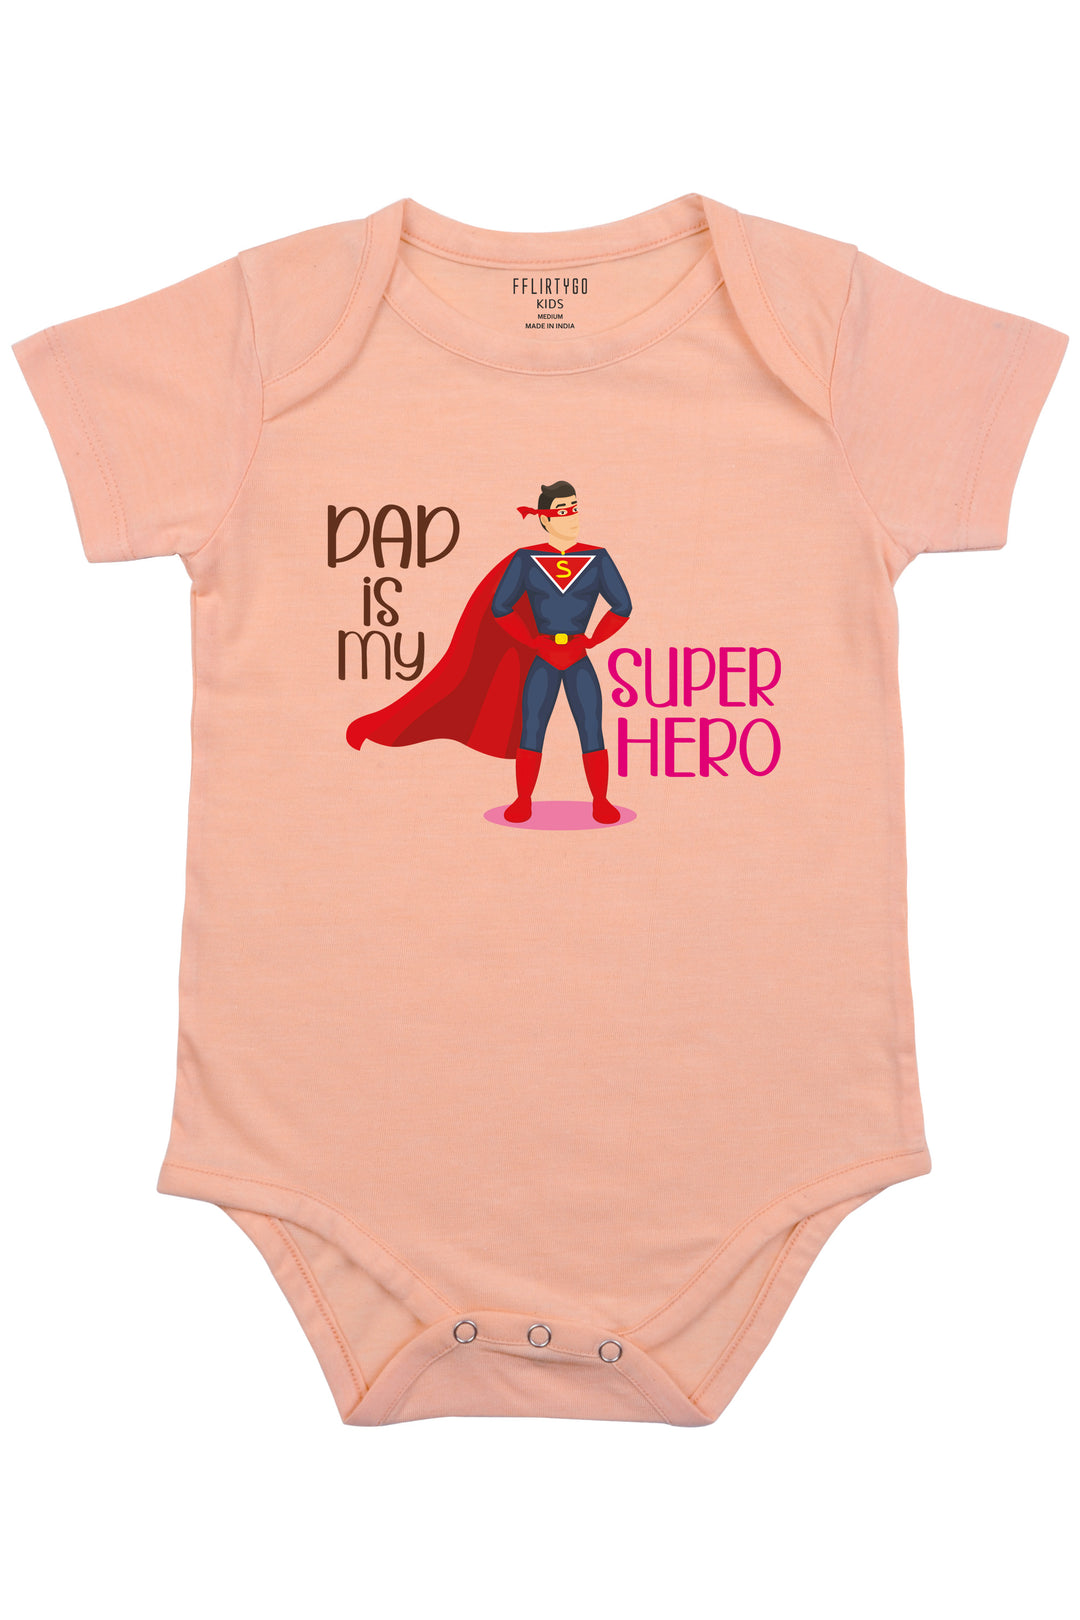 Dad is my Superhero Baby Romper | Onesies